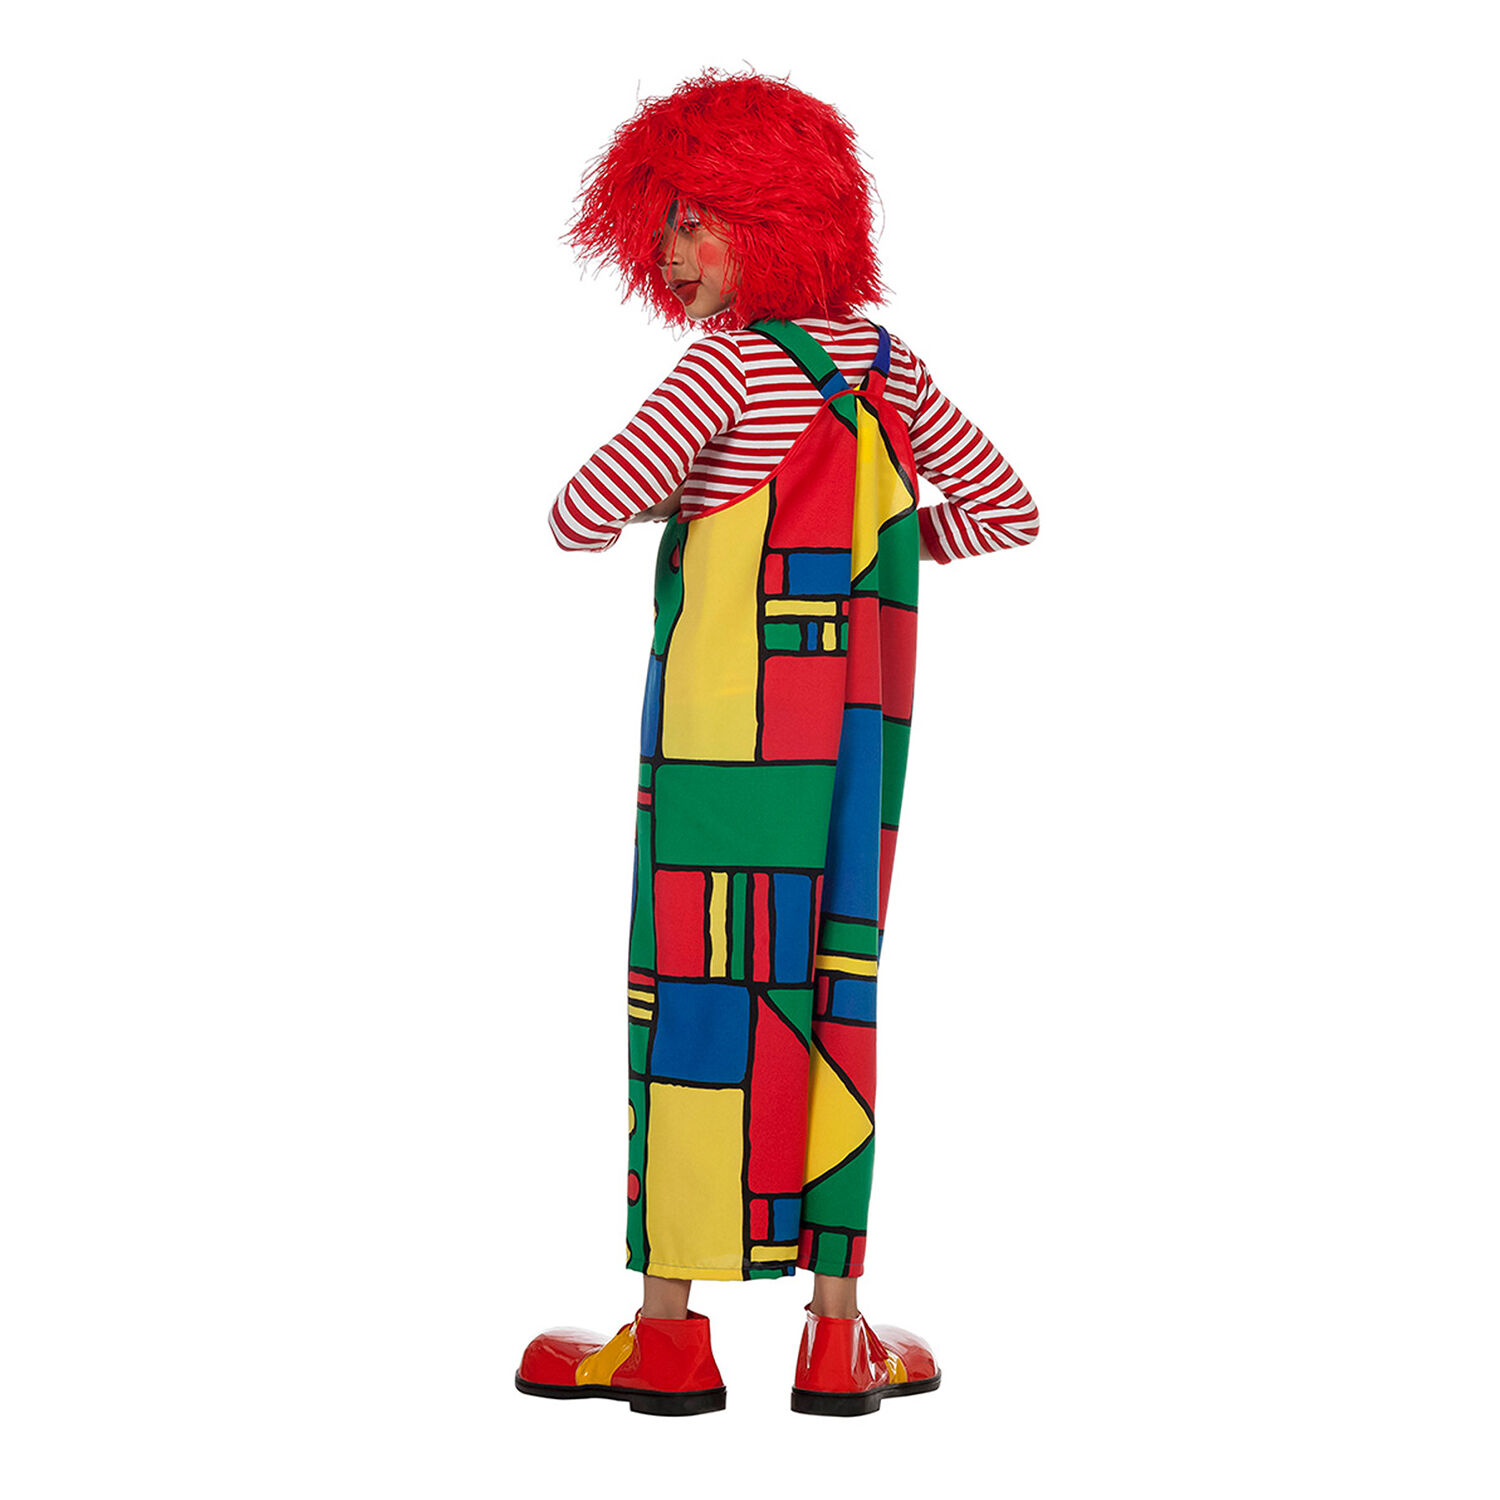 NEU Kinder-Kostm Clown-Latzhose Mondrian, bunt, Gr. 116 Bild 3